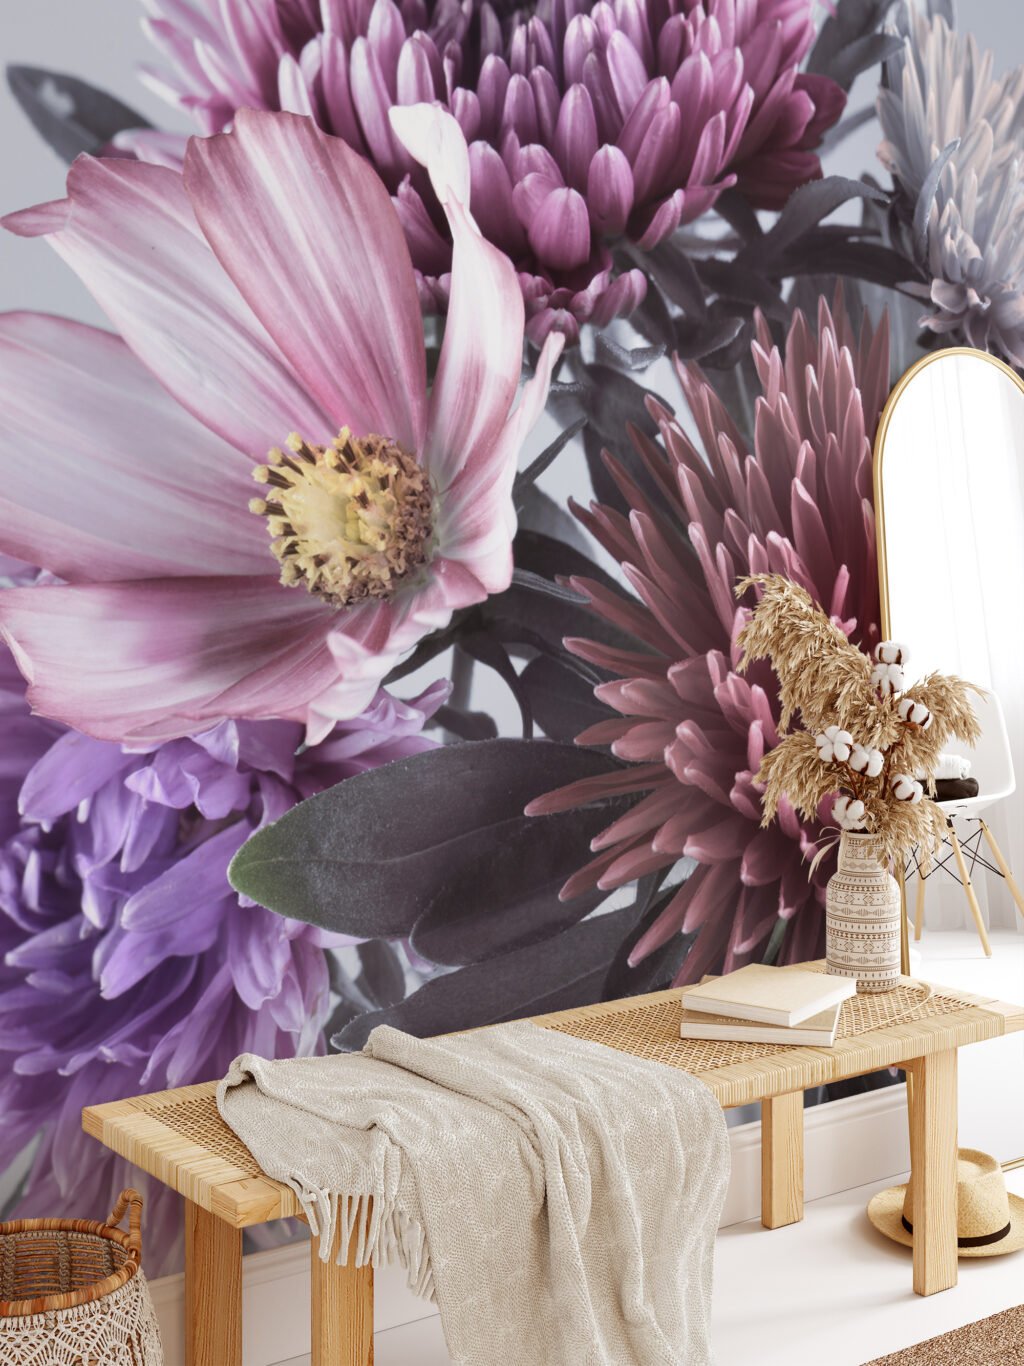 Canlı Büyük Aster Çiçekleri Desenli Duvar Kağıdı, Oturma Odası veya Yatak Odası İçin Renkli ve Etkileyici Çiçekli Duvar Posteri Çiçekli Duvar Kağıtları 4